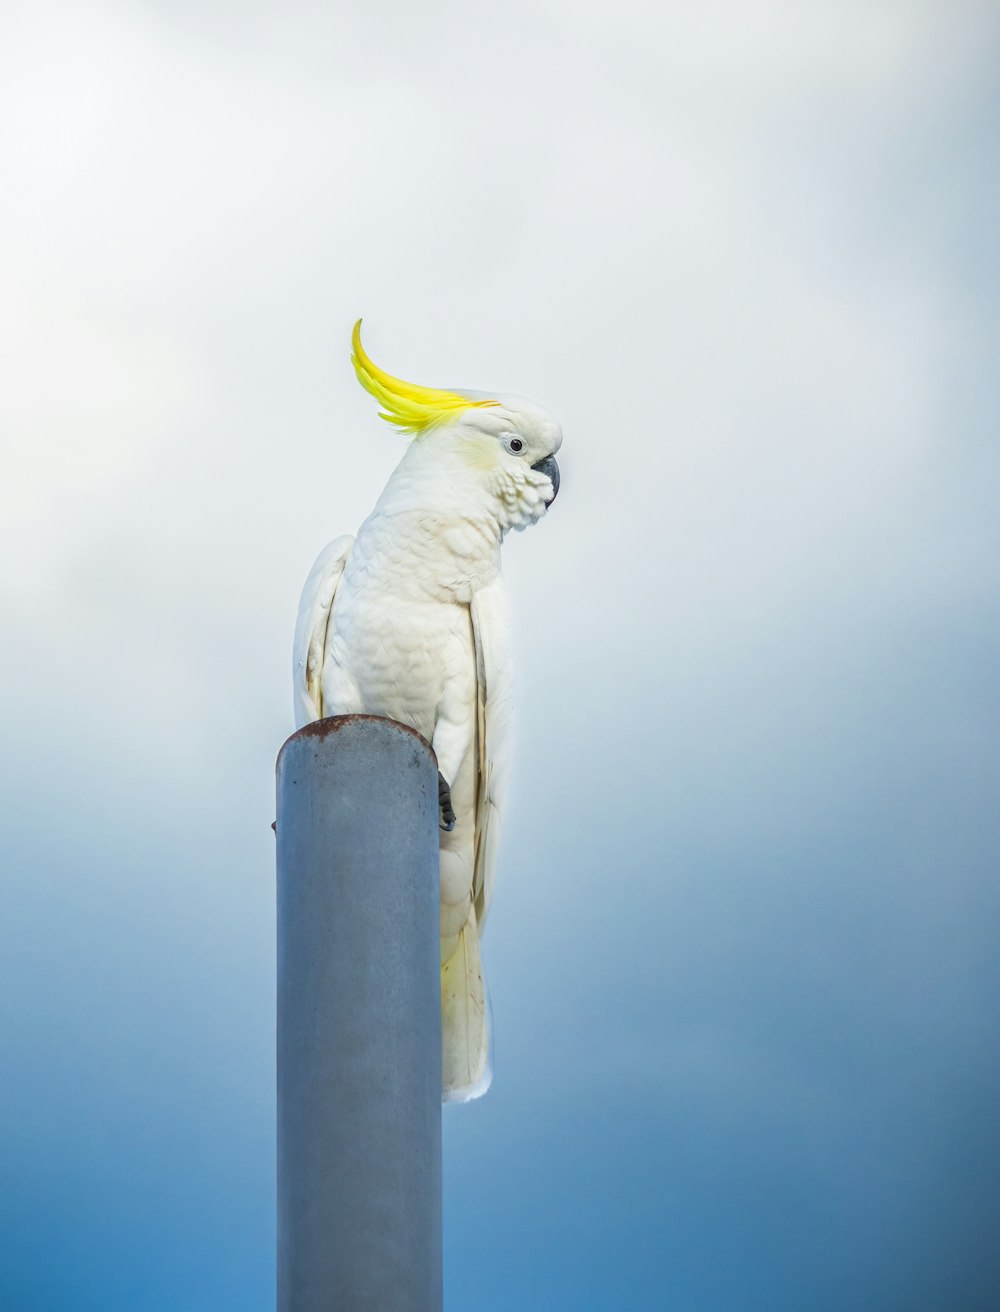 Un oiseau blanc avec un mohawk jaune assis au sommet d’un poteau